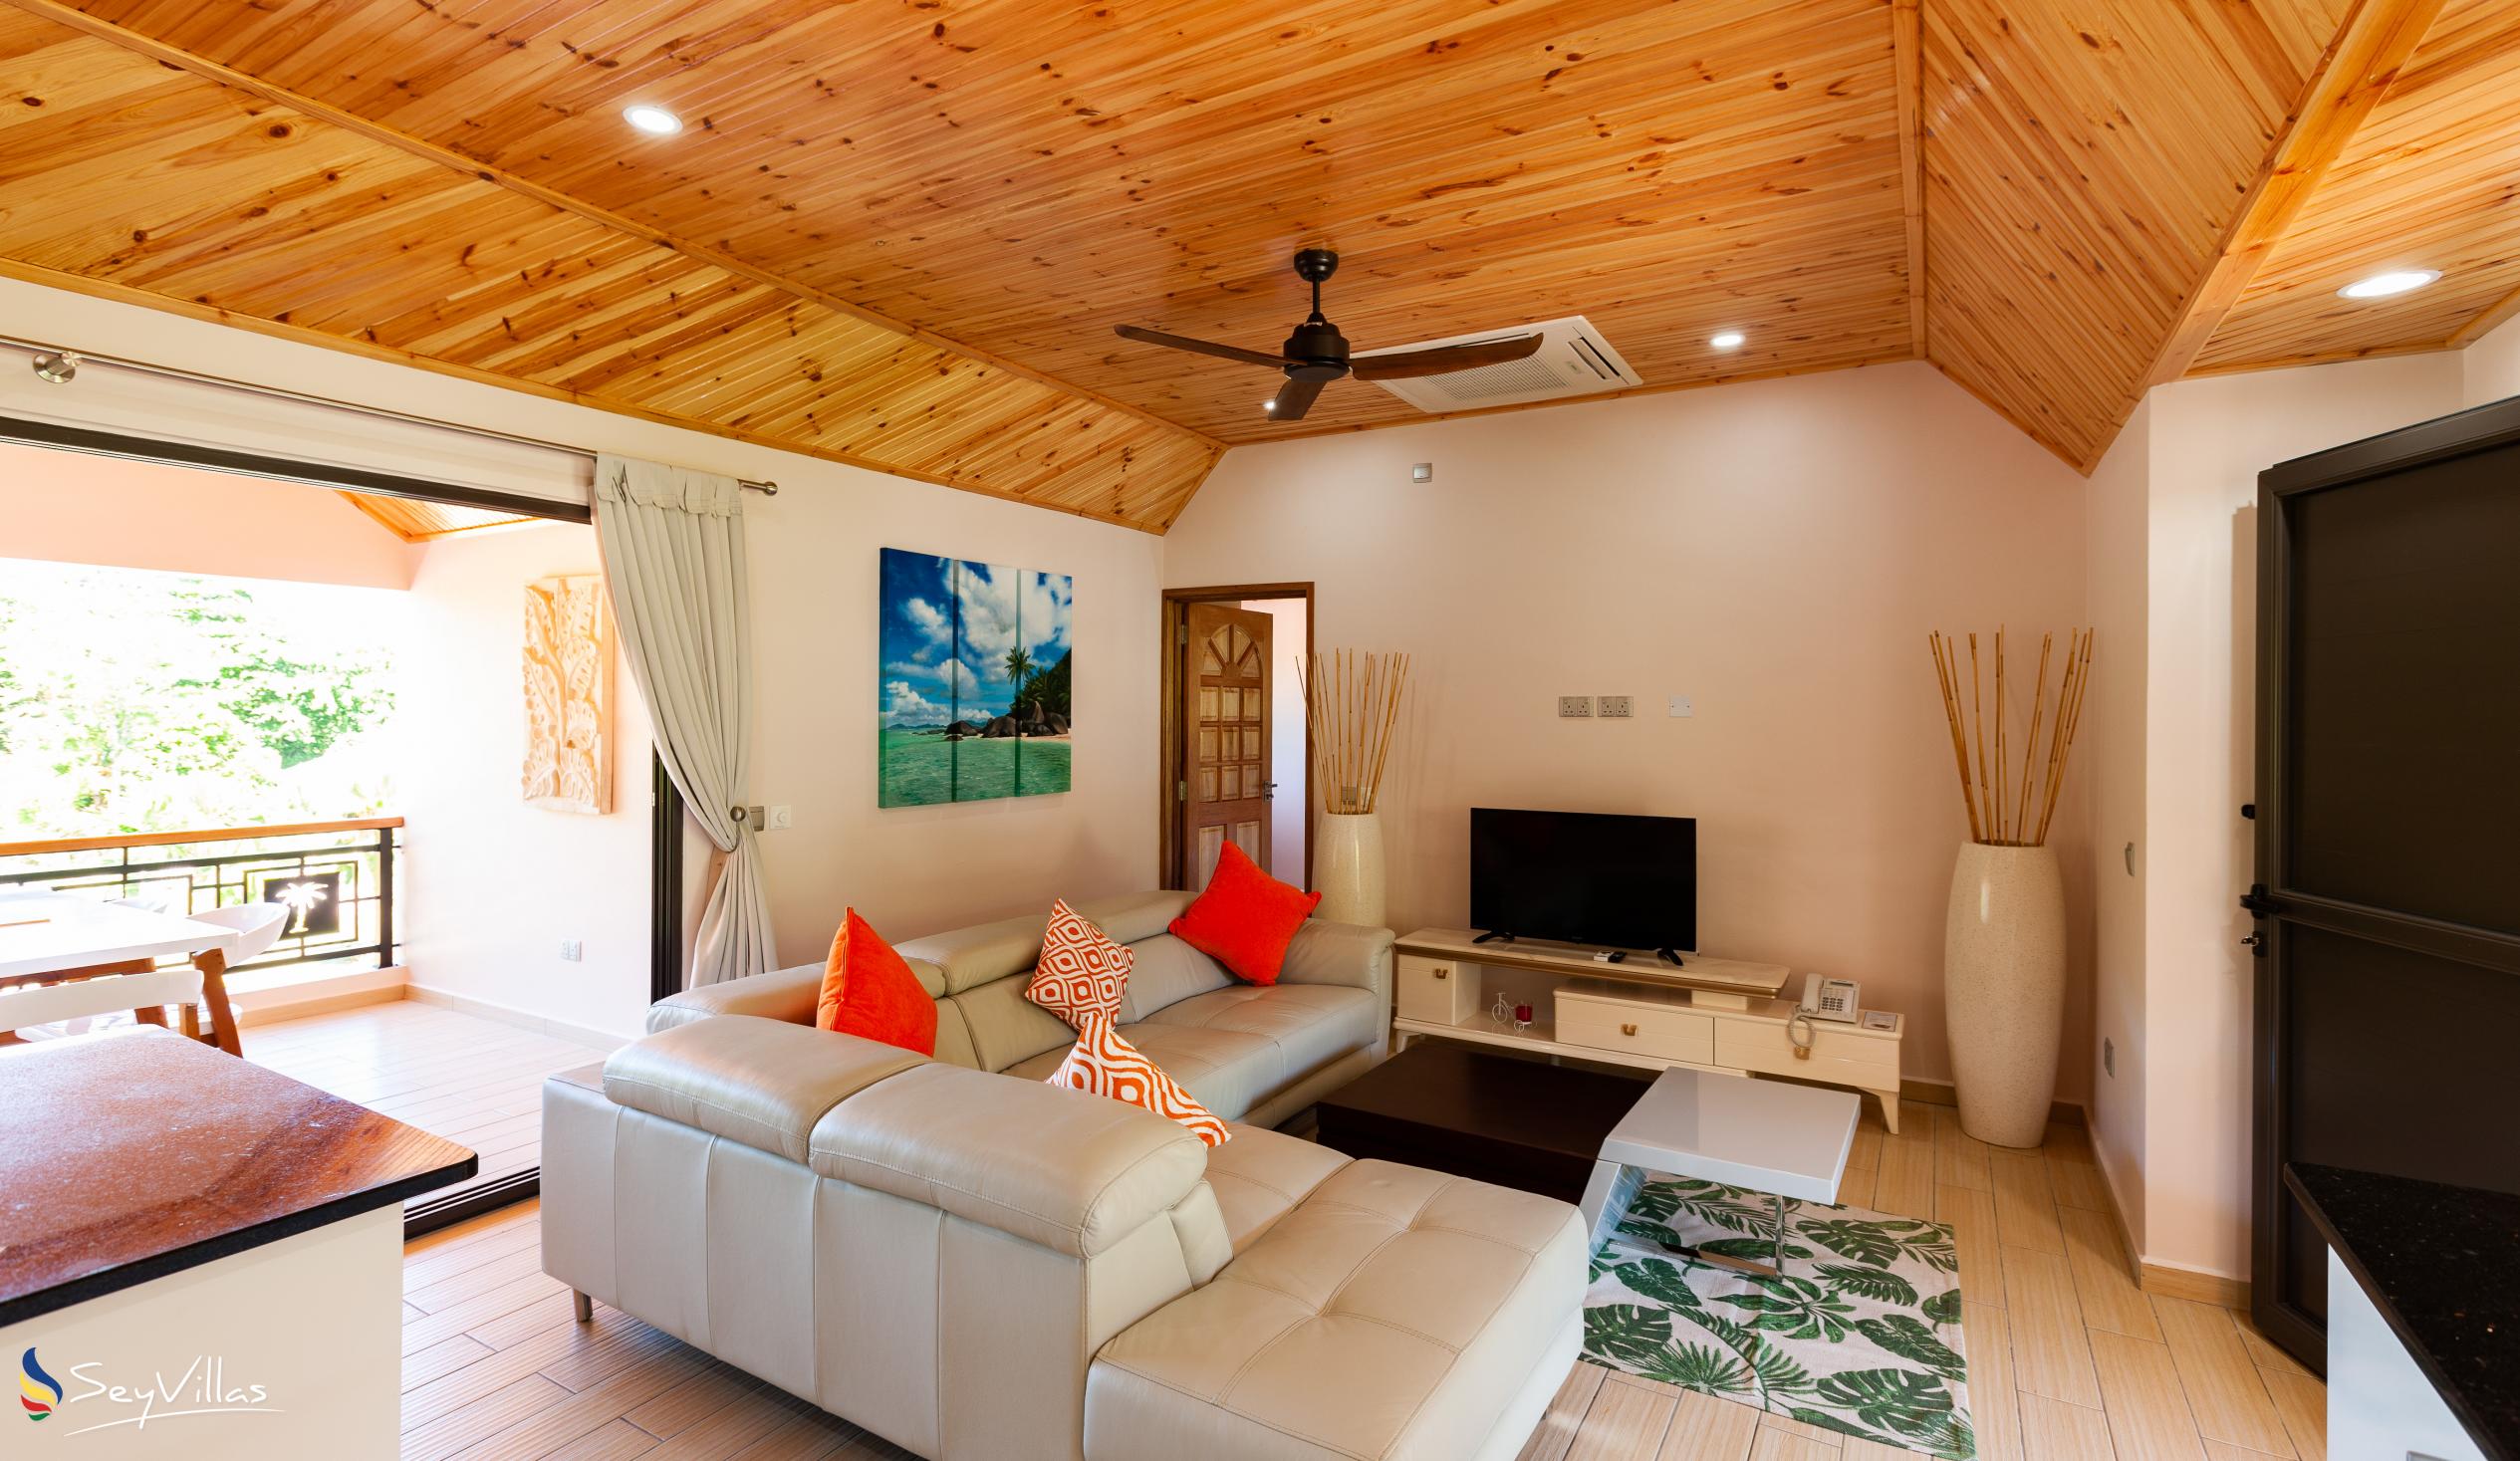 Photo 146: Casa de Leela - Penthouse Apartment - La Digue (Seychelles)